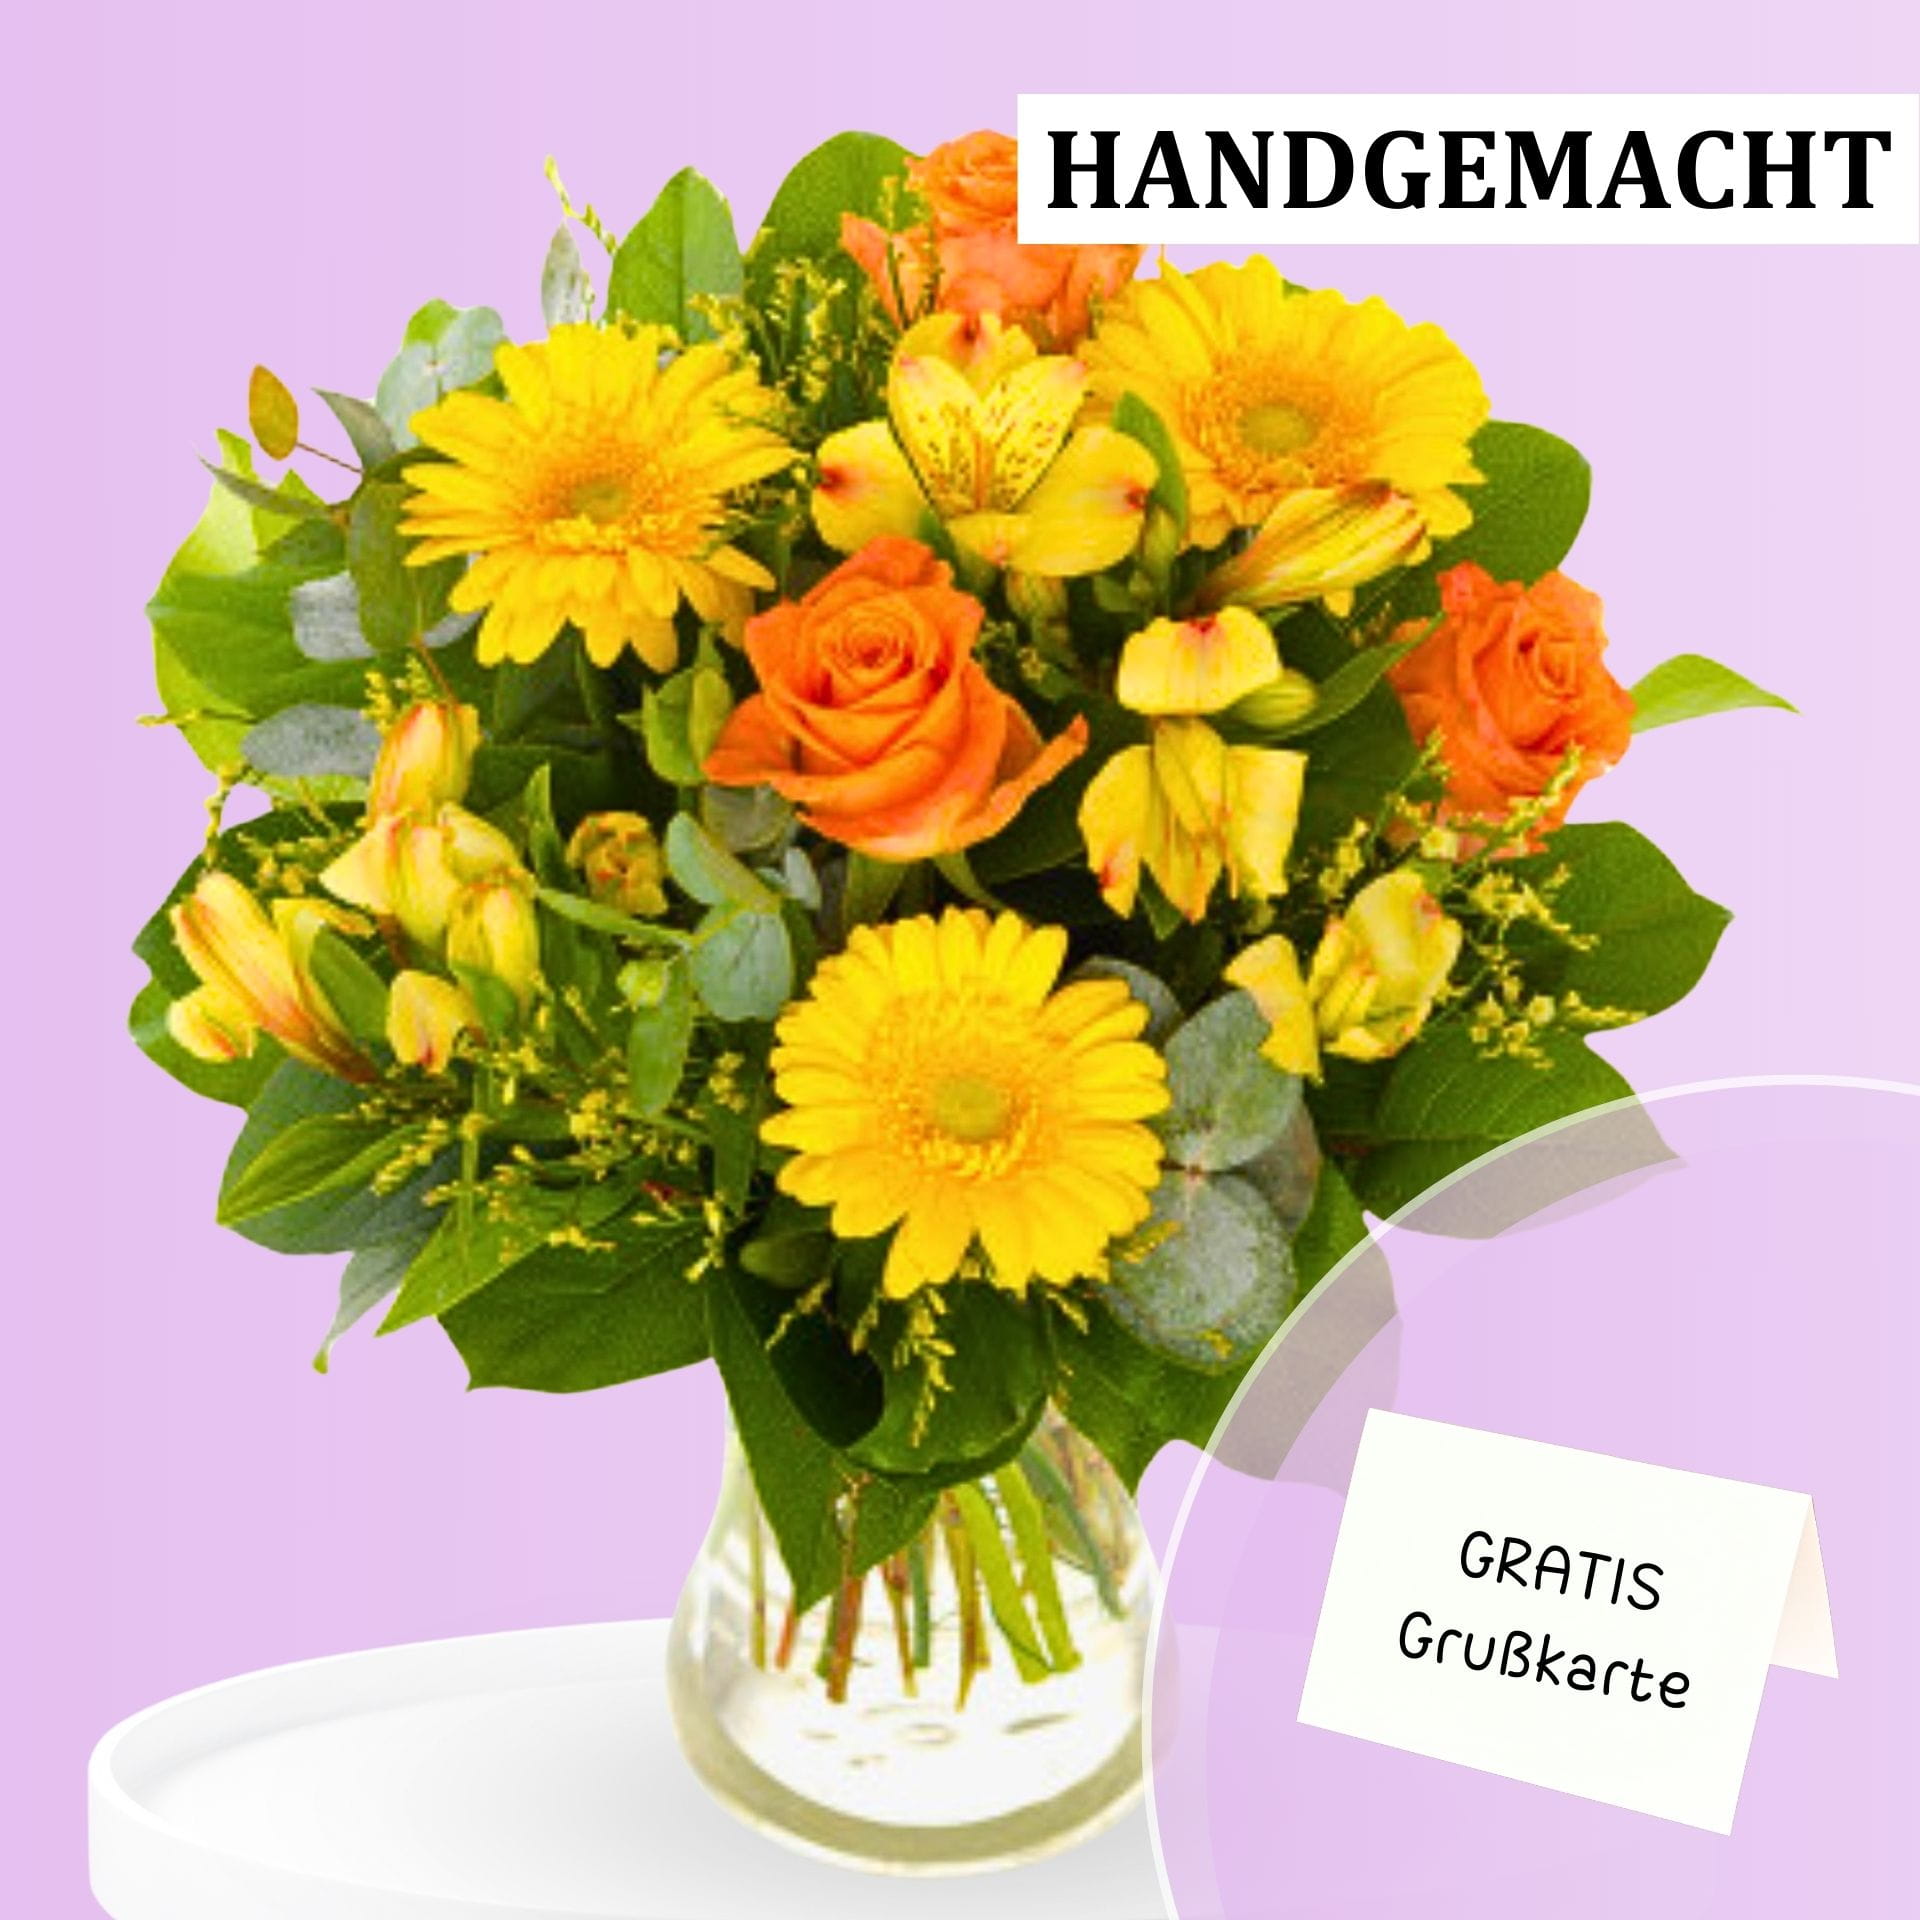 Ein bunter Blumenstrauß mit gelben und orangefarbenen Rosen und Gerberas.